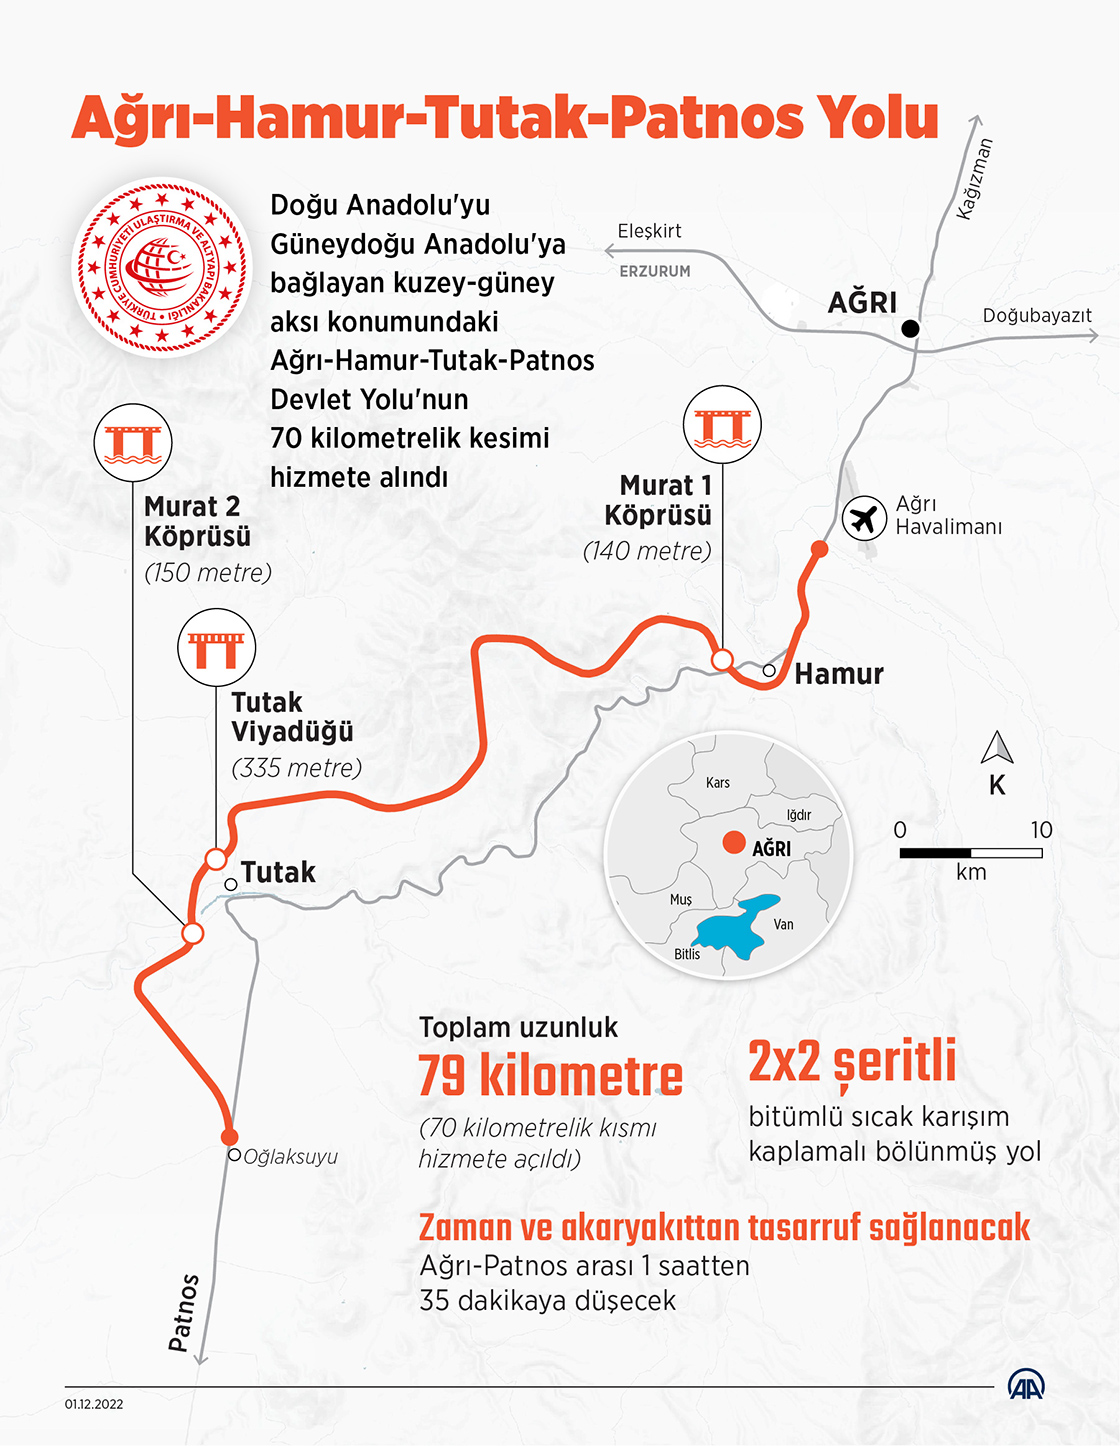 Ağrı-Hamur-Tutak-Patnos kara yolu ulaşıma açıldı